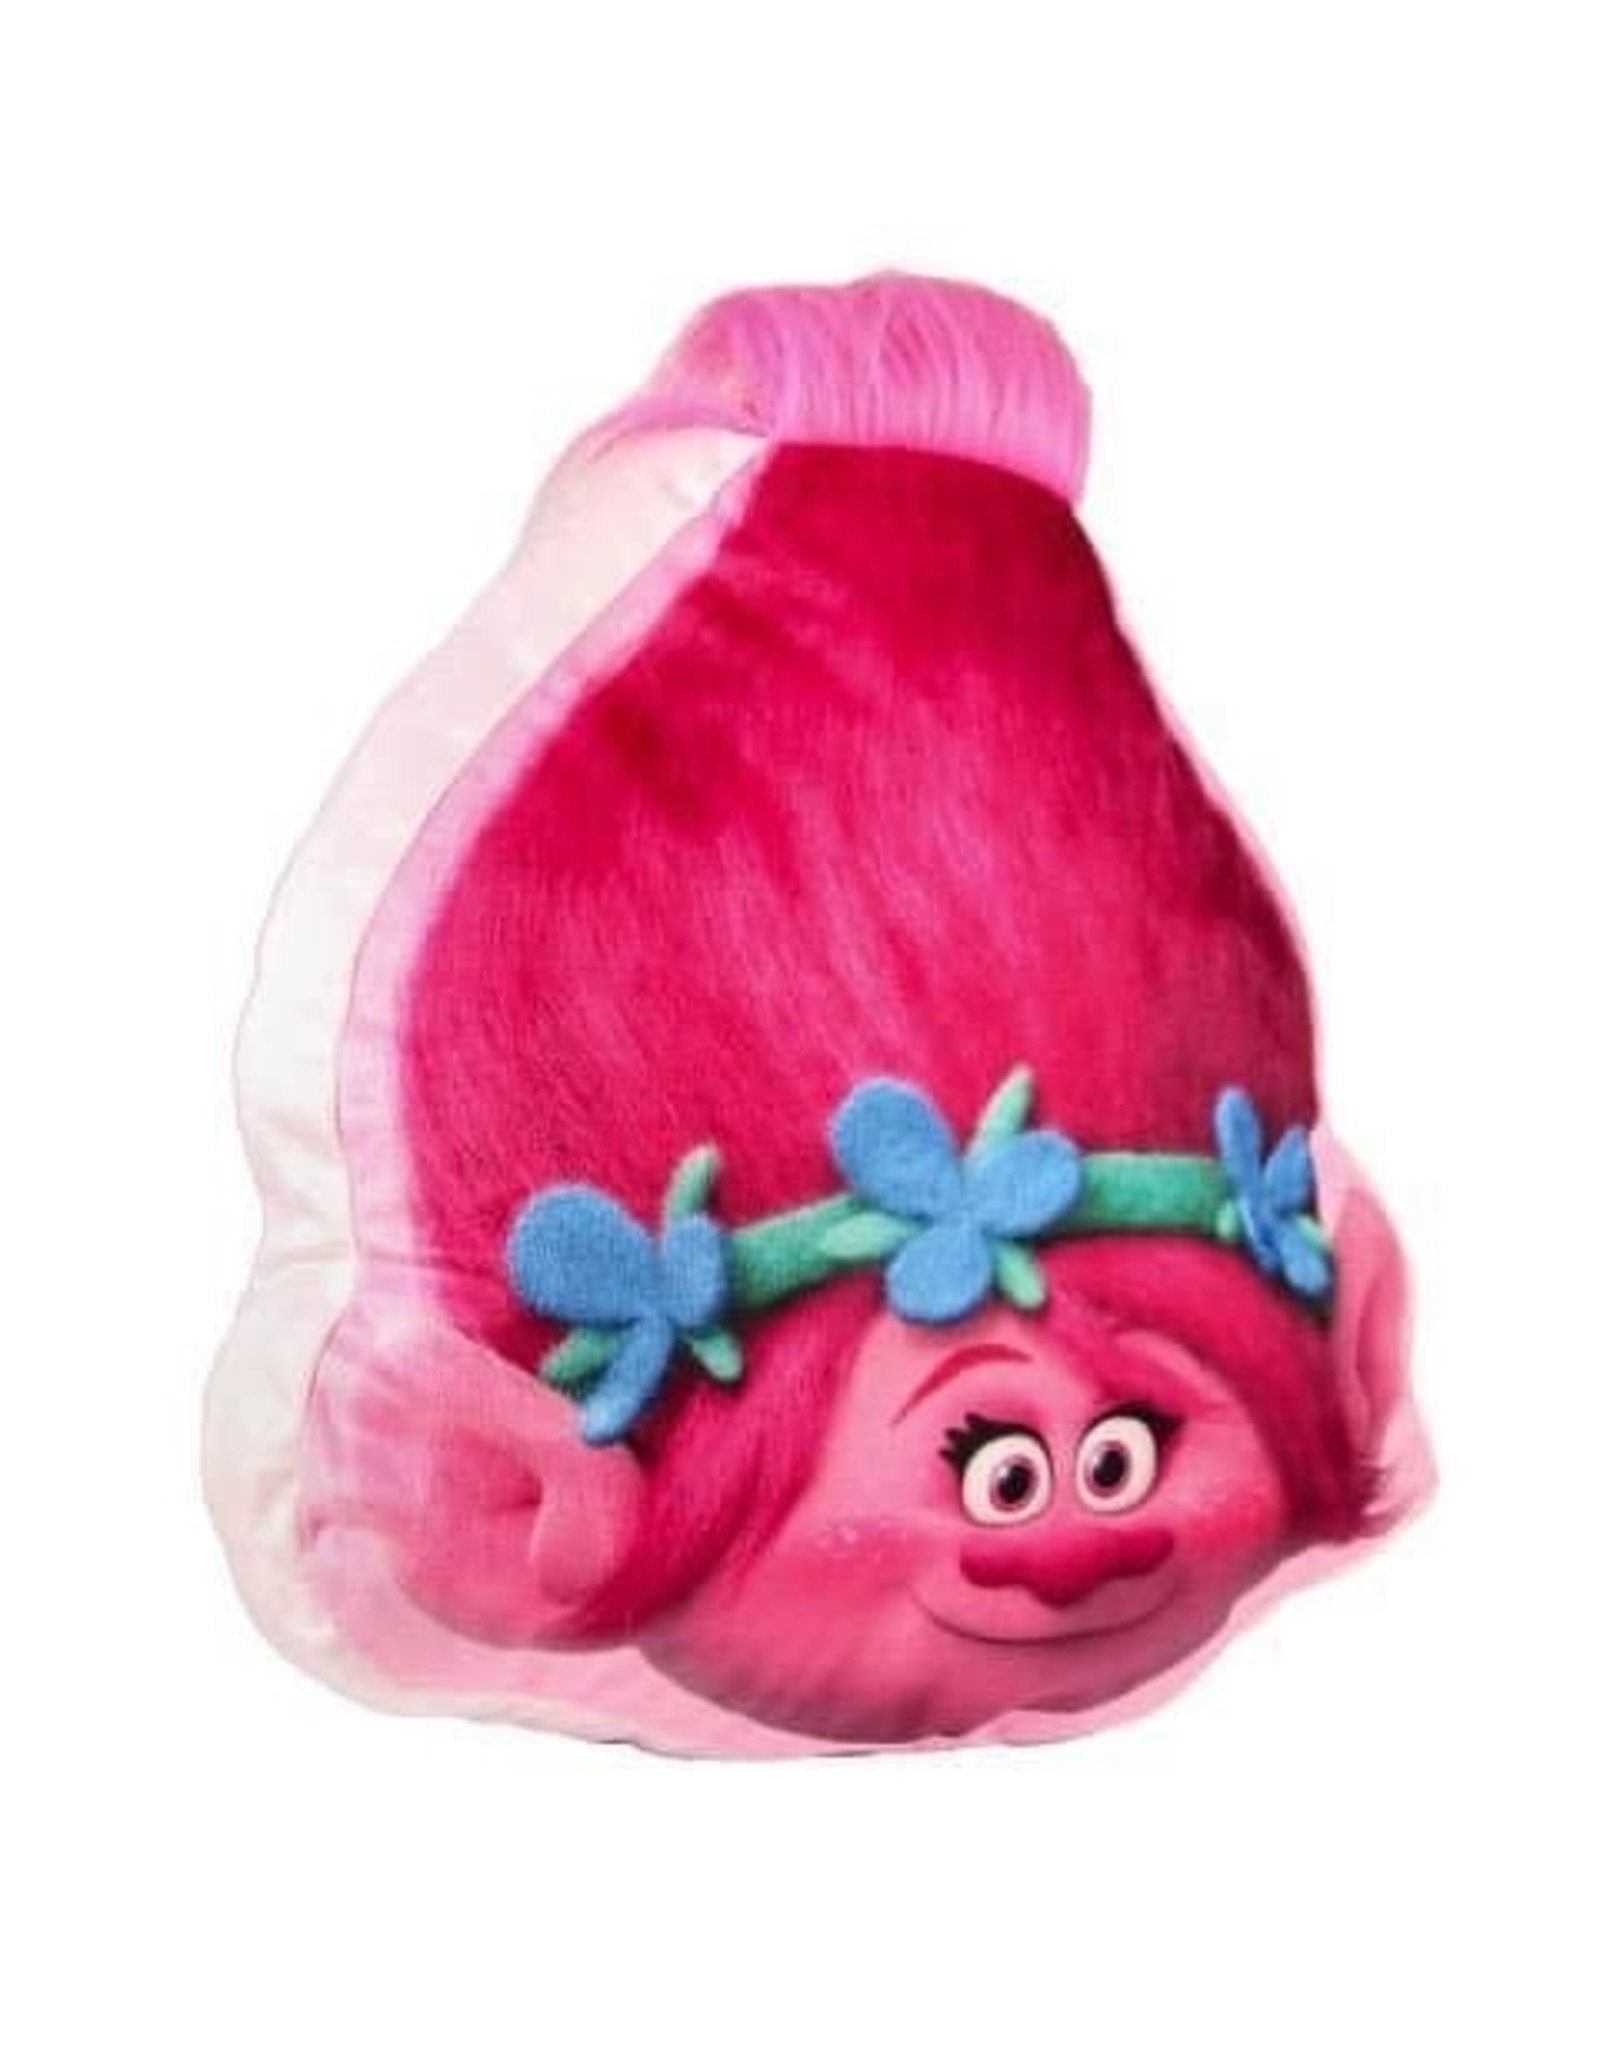 Trolls Merchandise toys - Poppy Trolls cushion